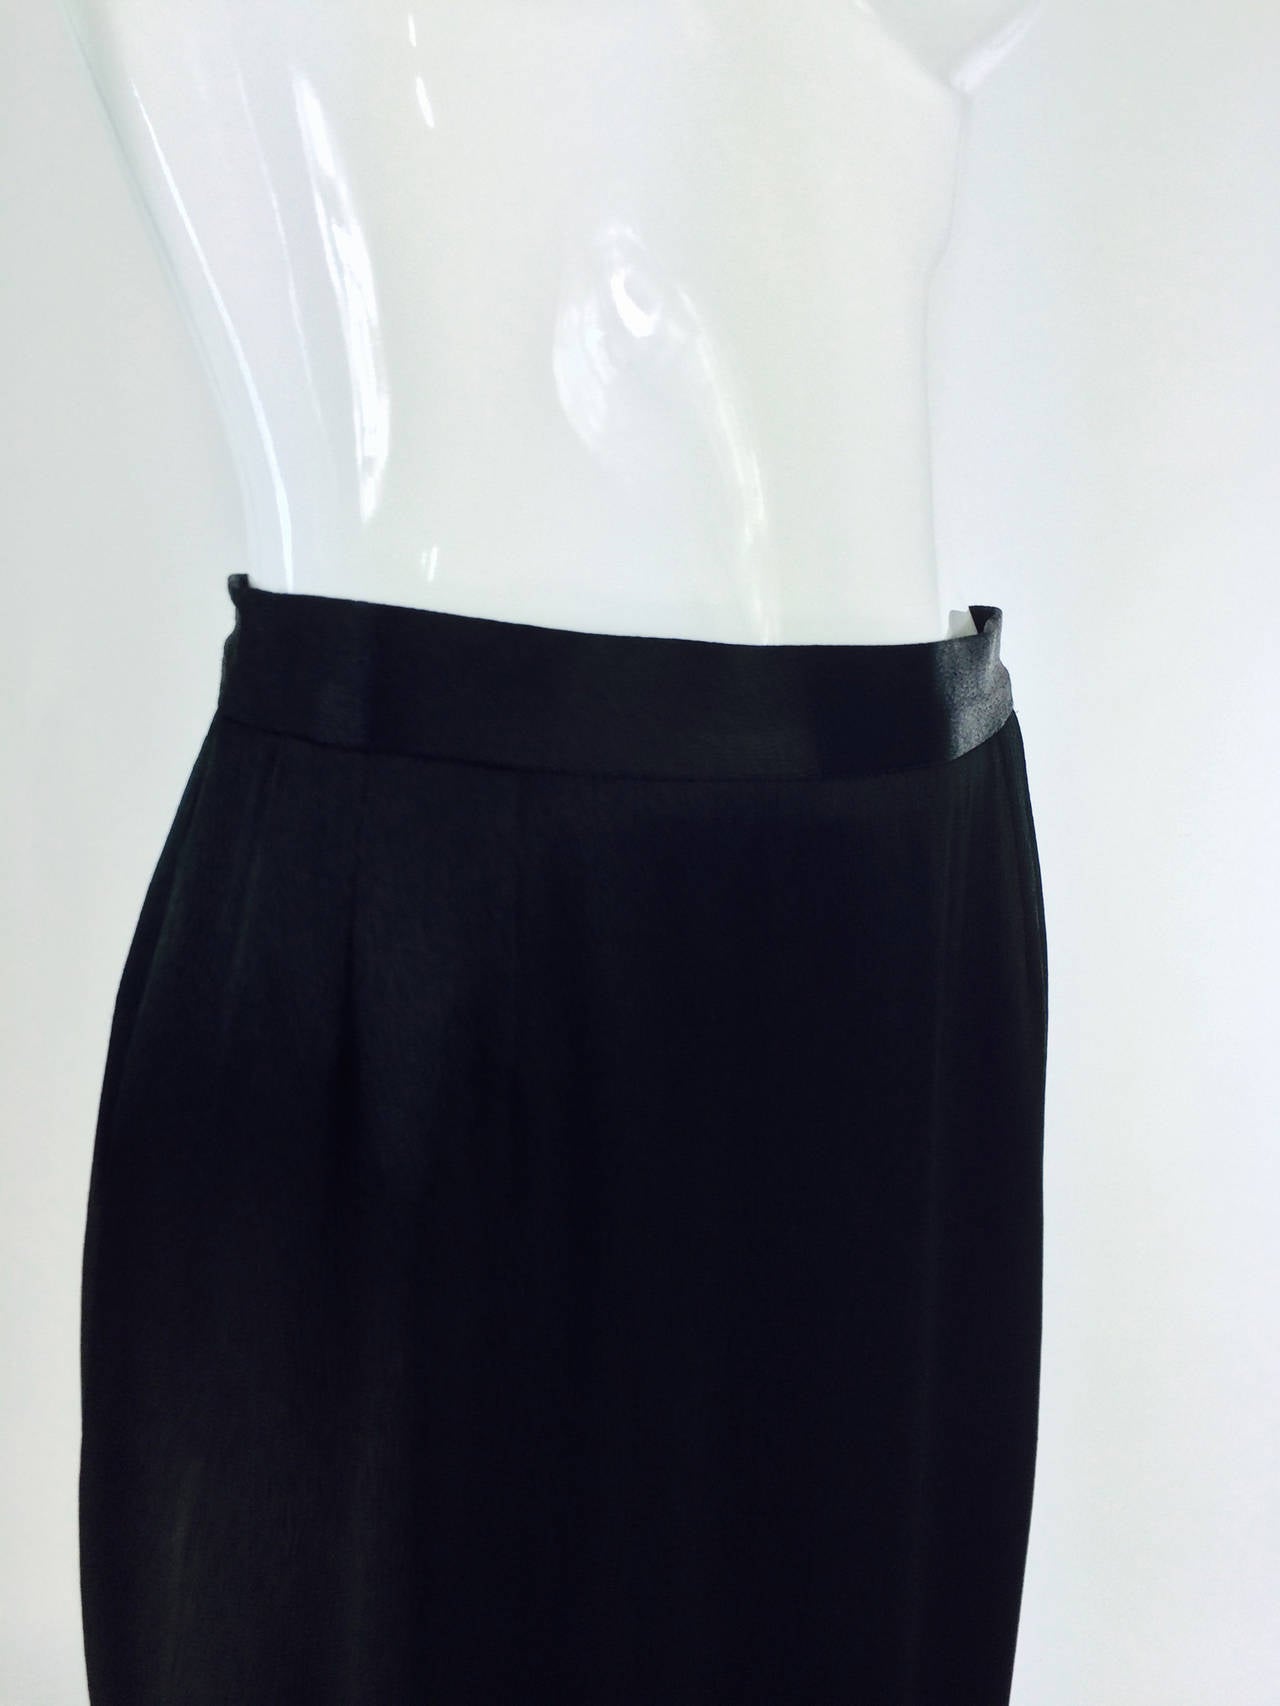 Yves St Laurent Rive Gauche black hammered satin evening skirt 3